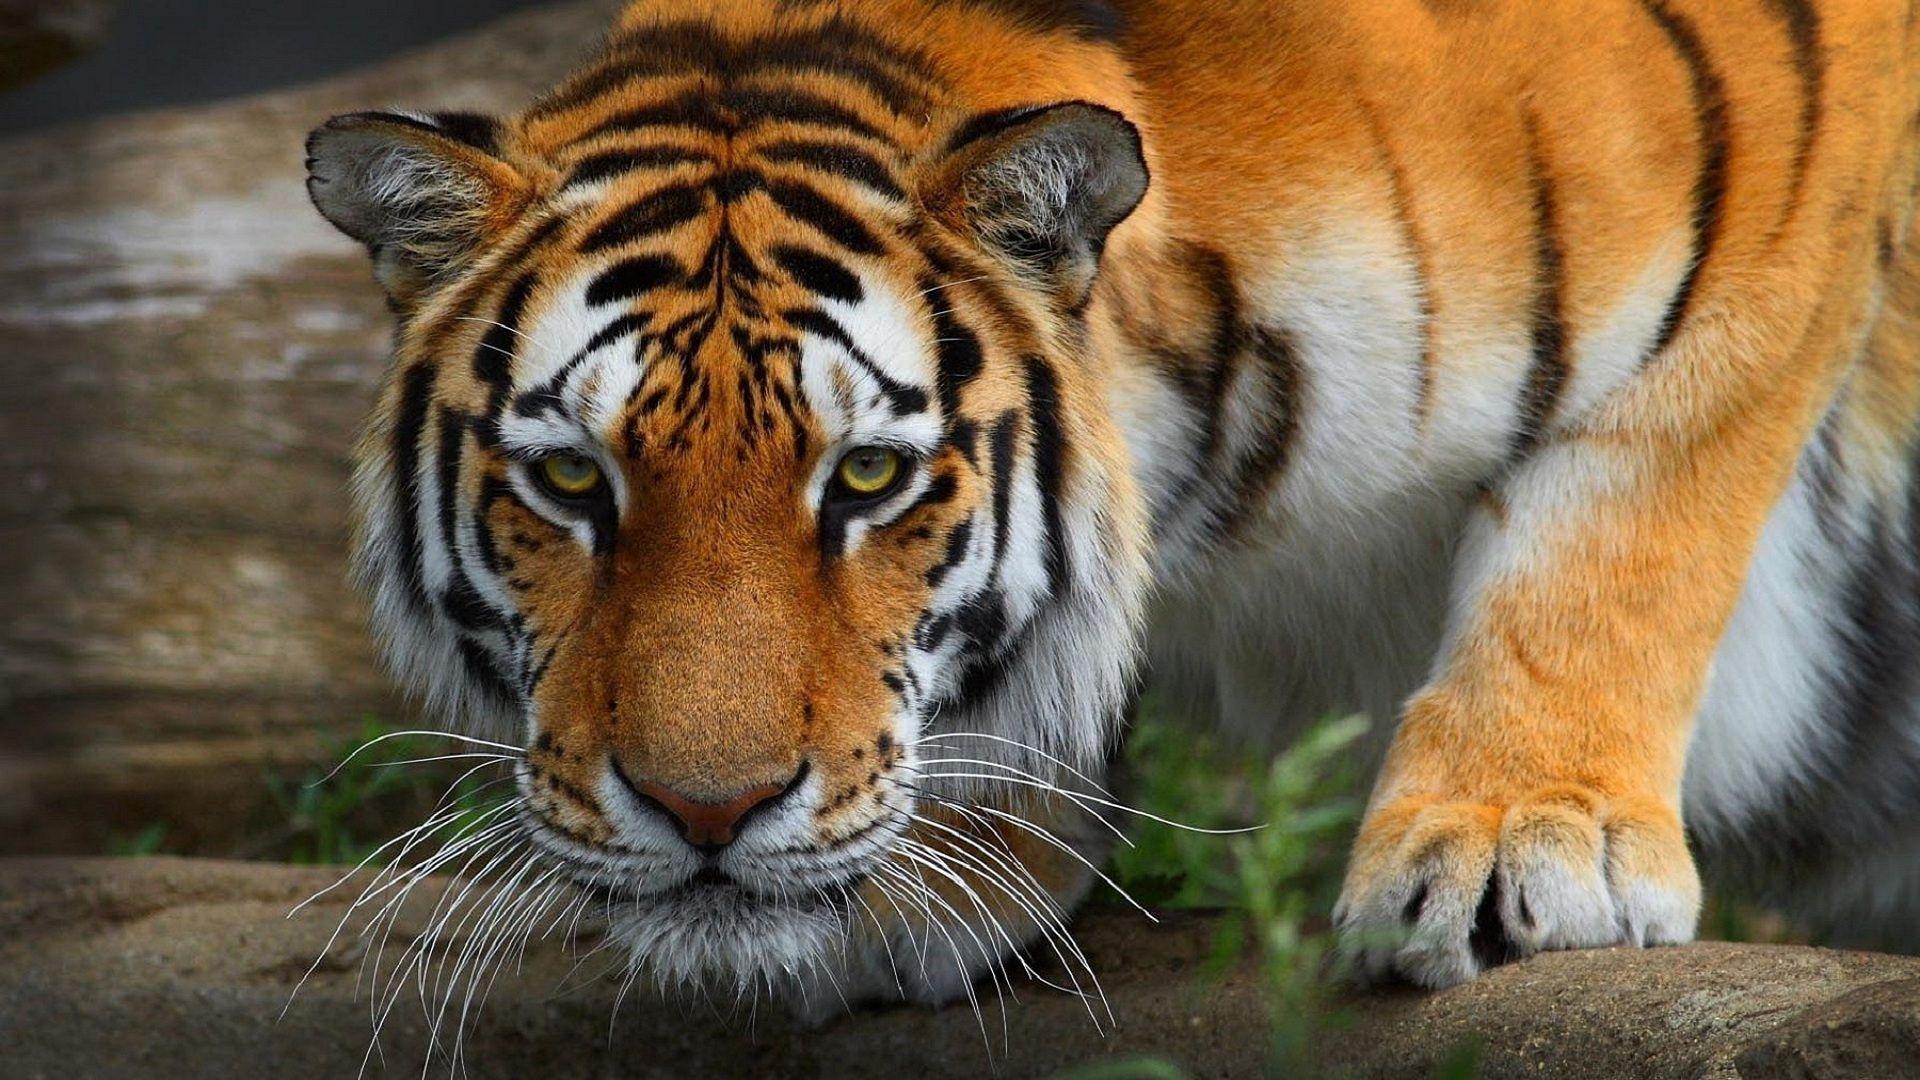 Tiger, Wildcat, Predator 01